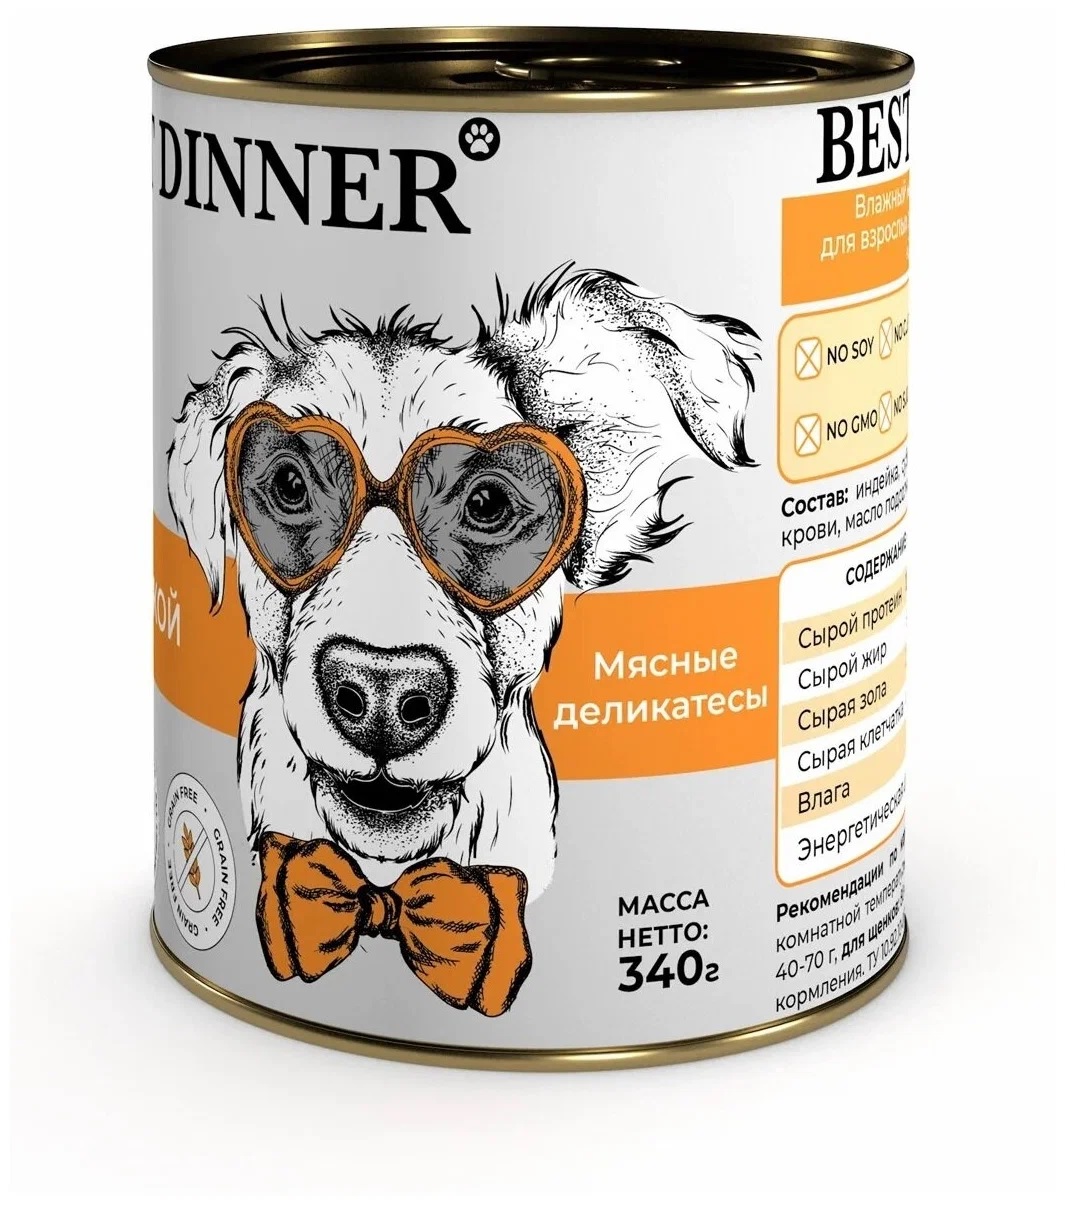 Best Dinner Super Premium консервы для собак и щенков с индейкой